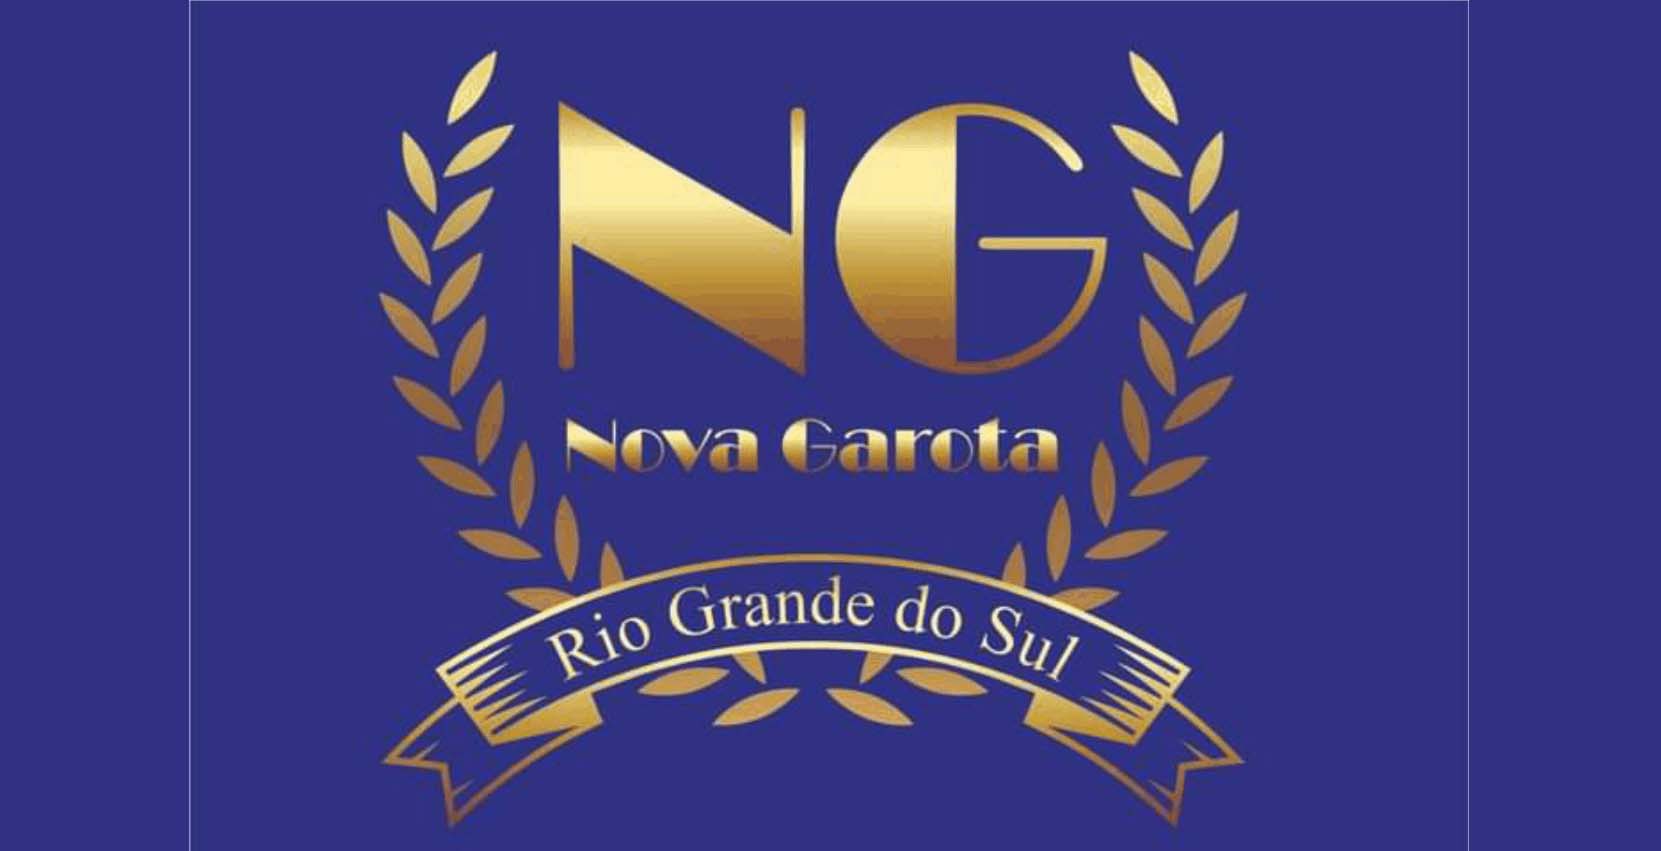 NOVA GAROTA RIO GRANDE DO SUL TERÁ SELETIVA EM IMBÉ